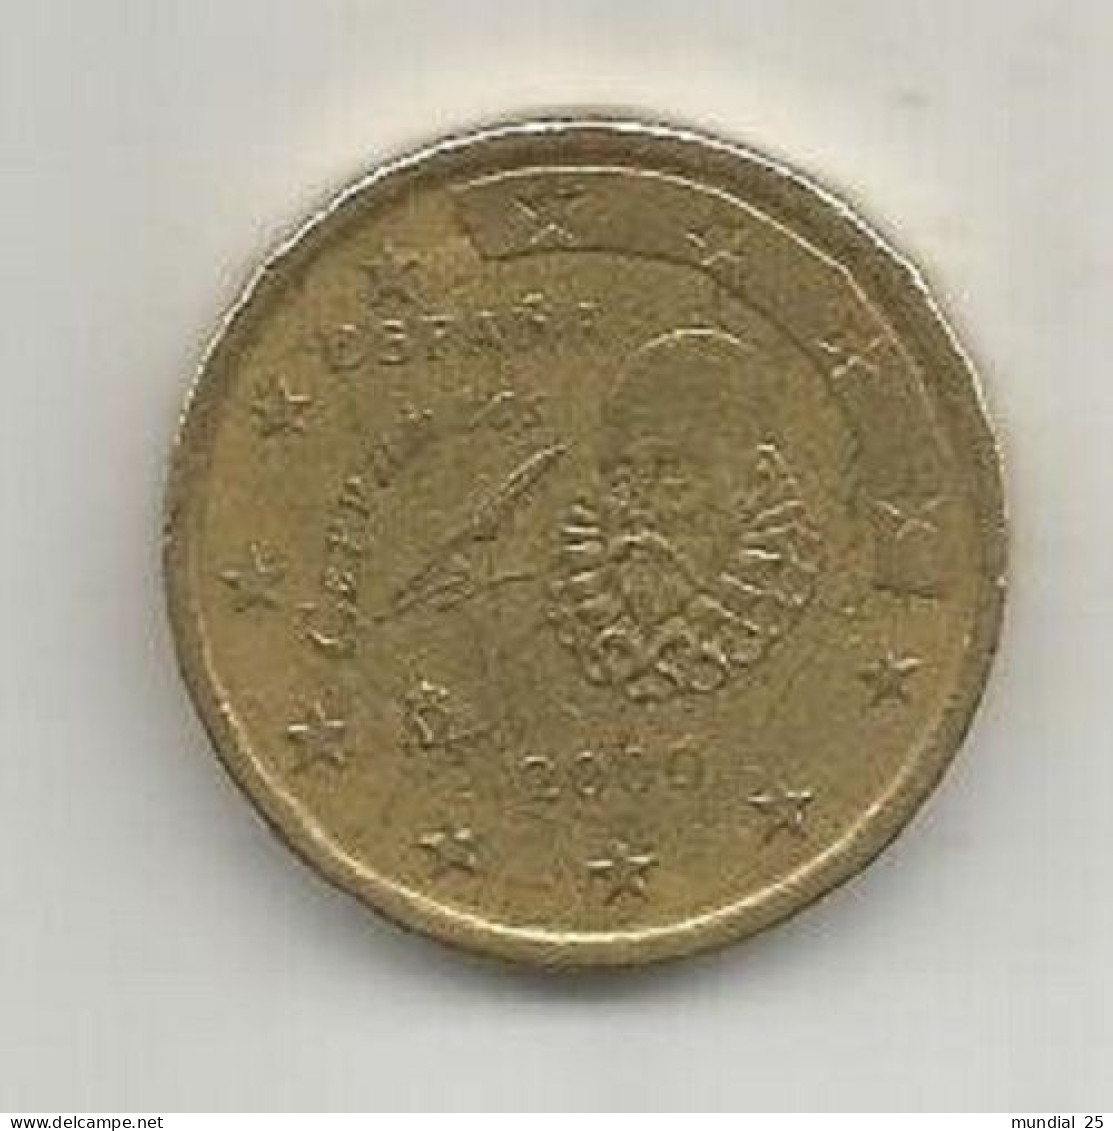 SPAIN 50 EURO CENT 2000 M - Spanien